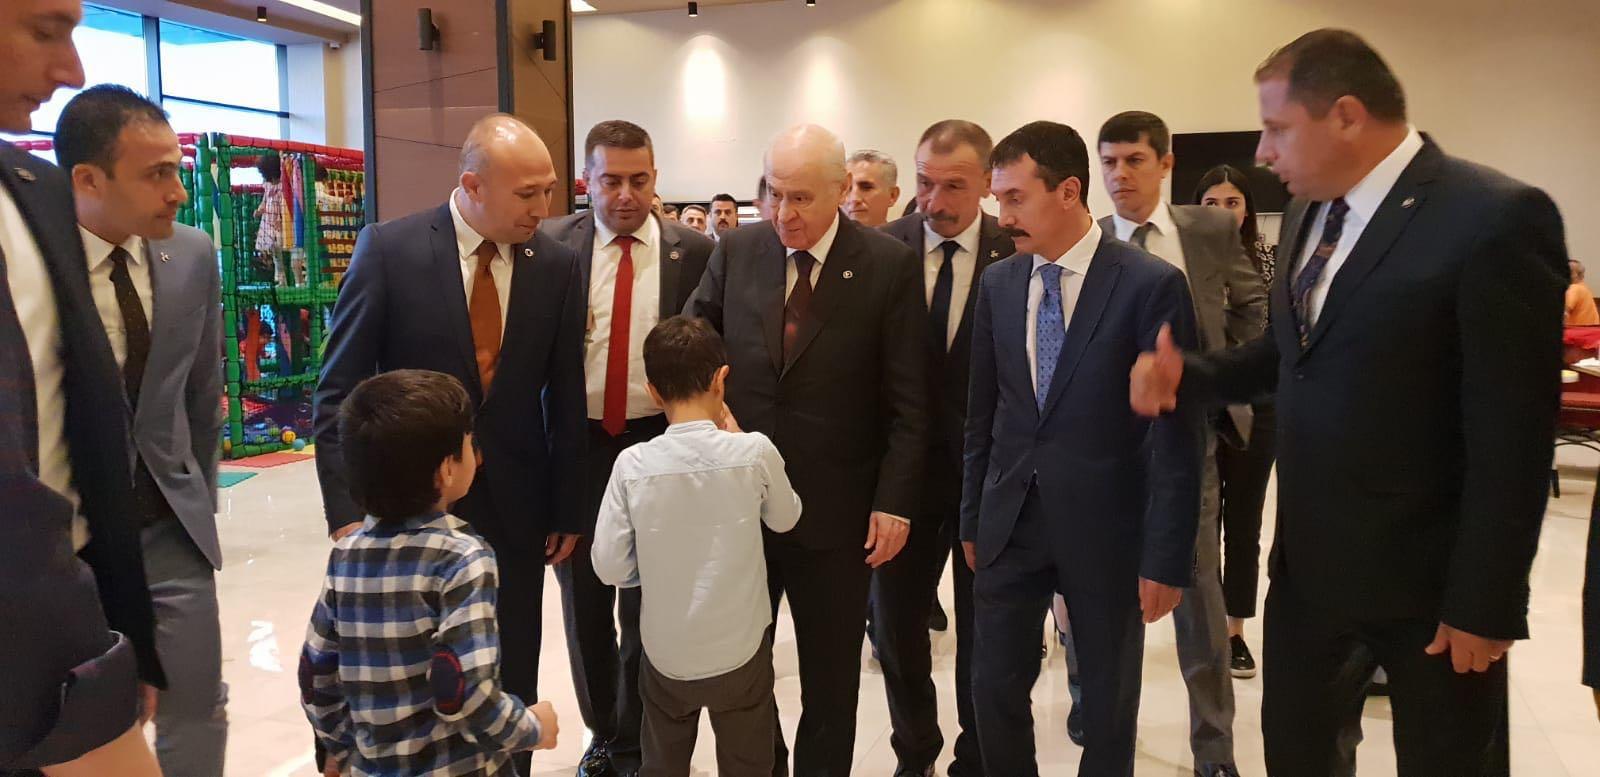 MHP Genel Başkanı Bahçeli, iftarını Kırıkkale’de açtı - Kırıkkale Haber, Son Dakika Kırıkkale Haberleri